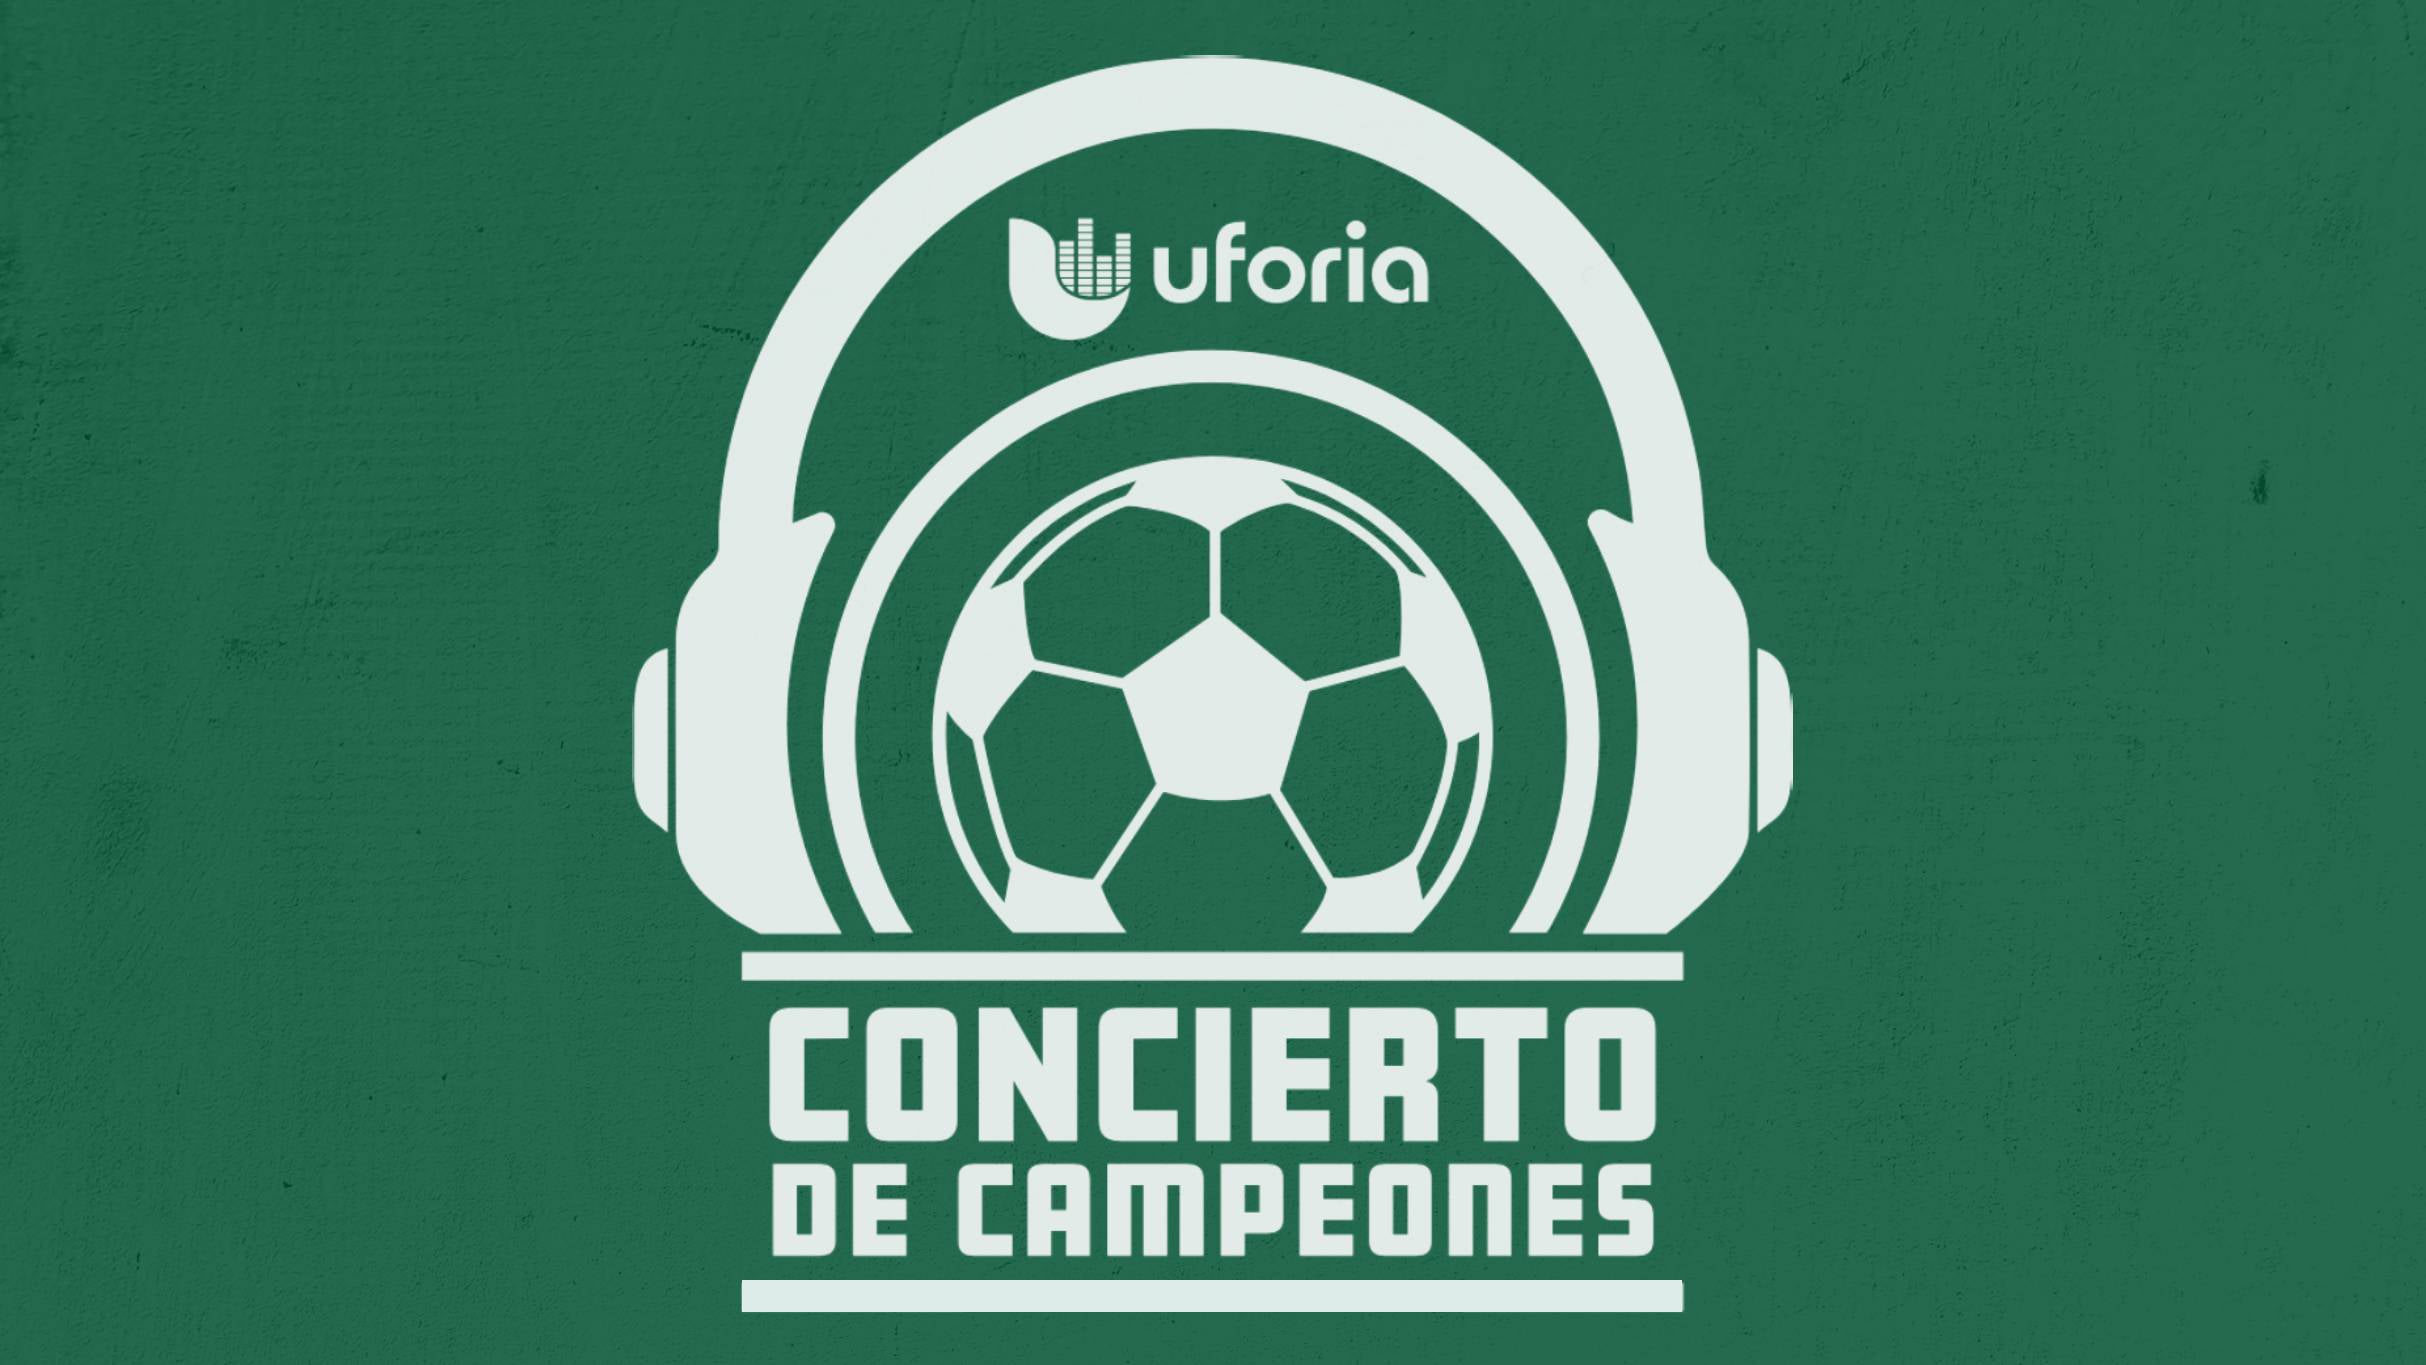 Uforia: Concierto de Campeones presale information on freepresalepasswords.com